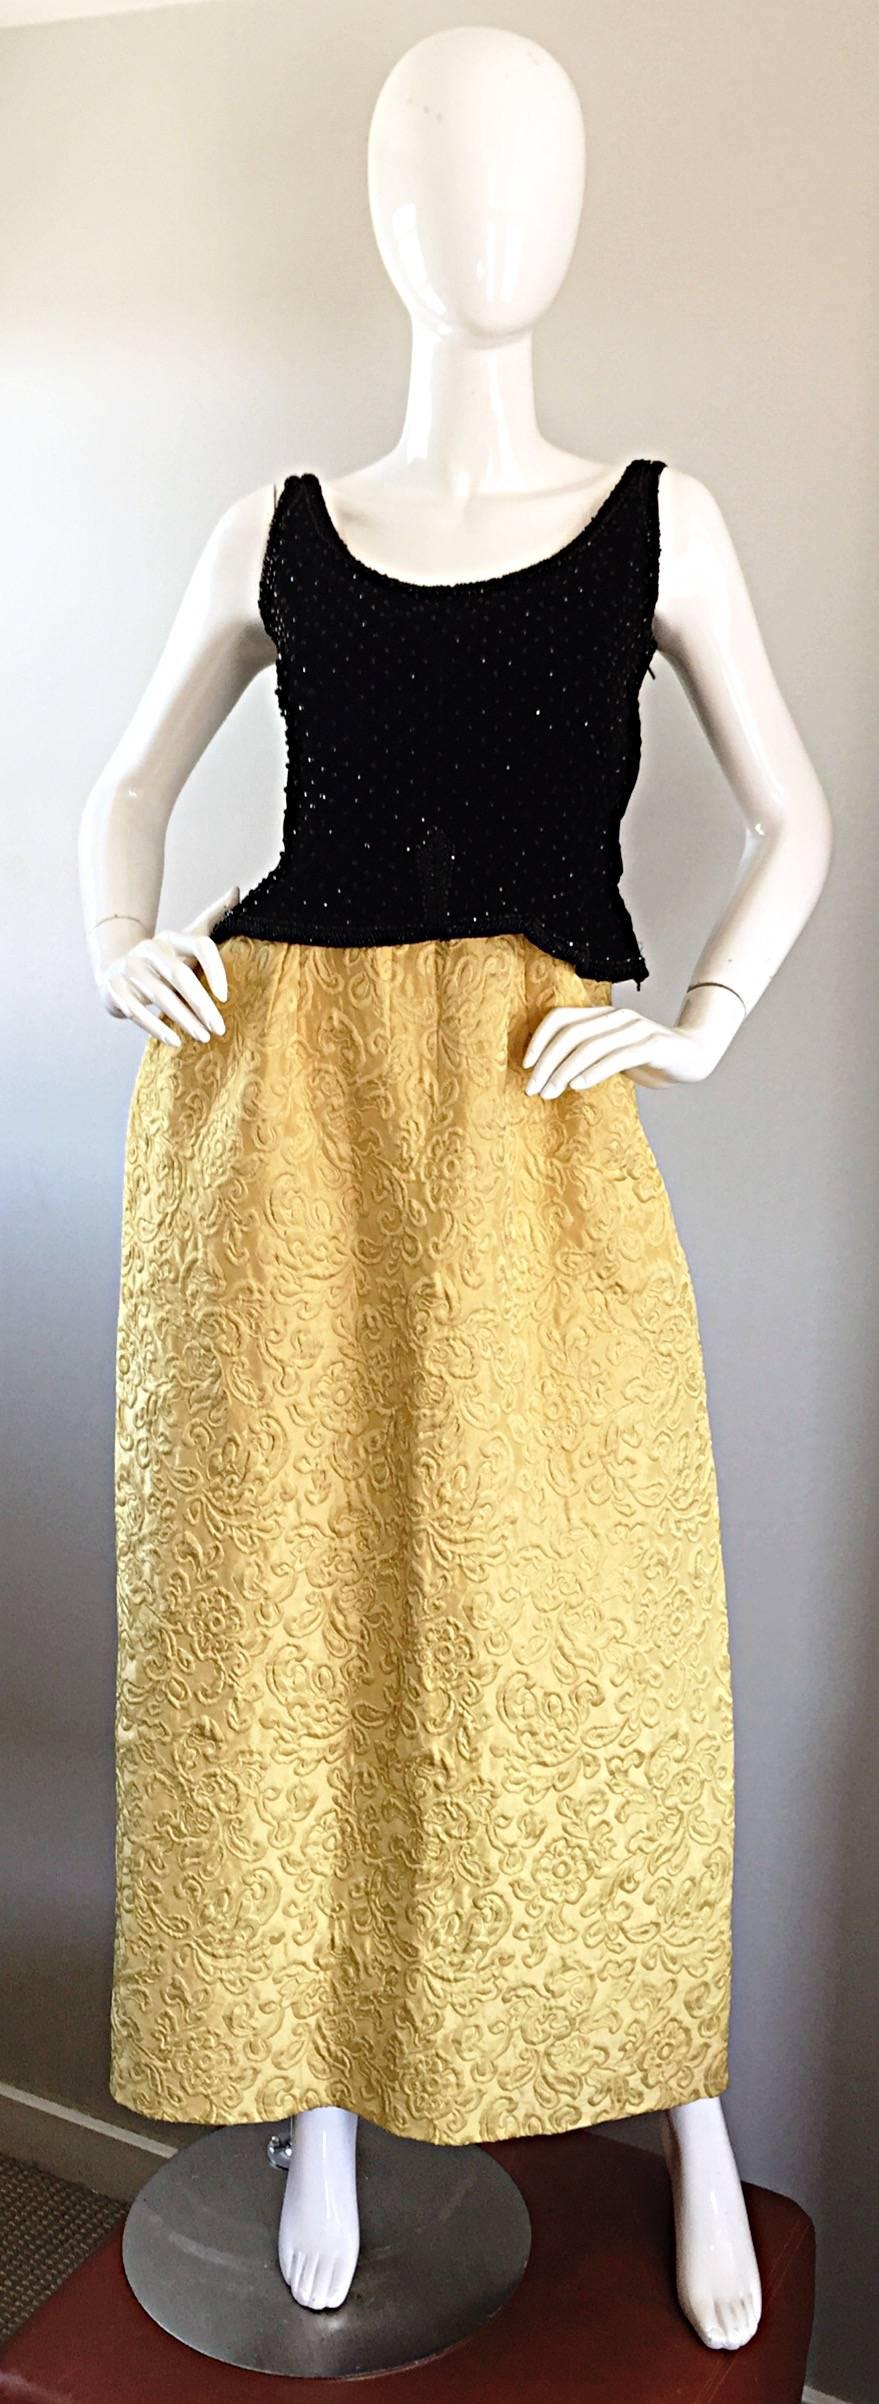 Magnifique robe de soirée BERGDORF GOODMAN ( Circa 1965 ) demi-couture marigold et perles noires ! Elle se compose d'une magnifique jupe en brocart de soie jaune d'or et d'un corsage ajusté en velours de soie noir. Le corsage est orné de perles